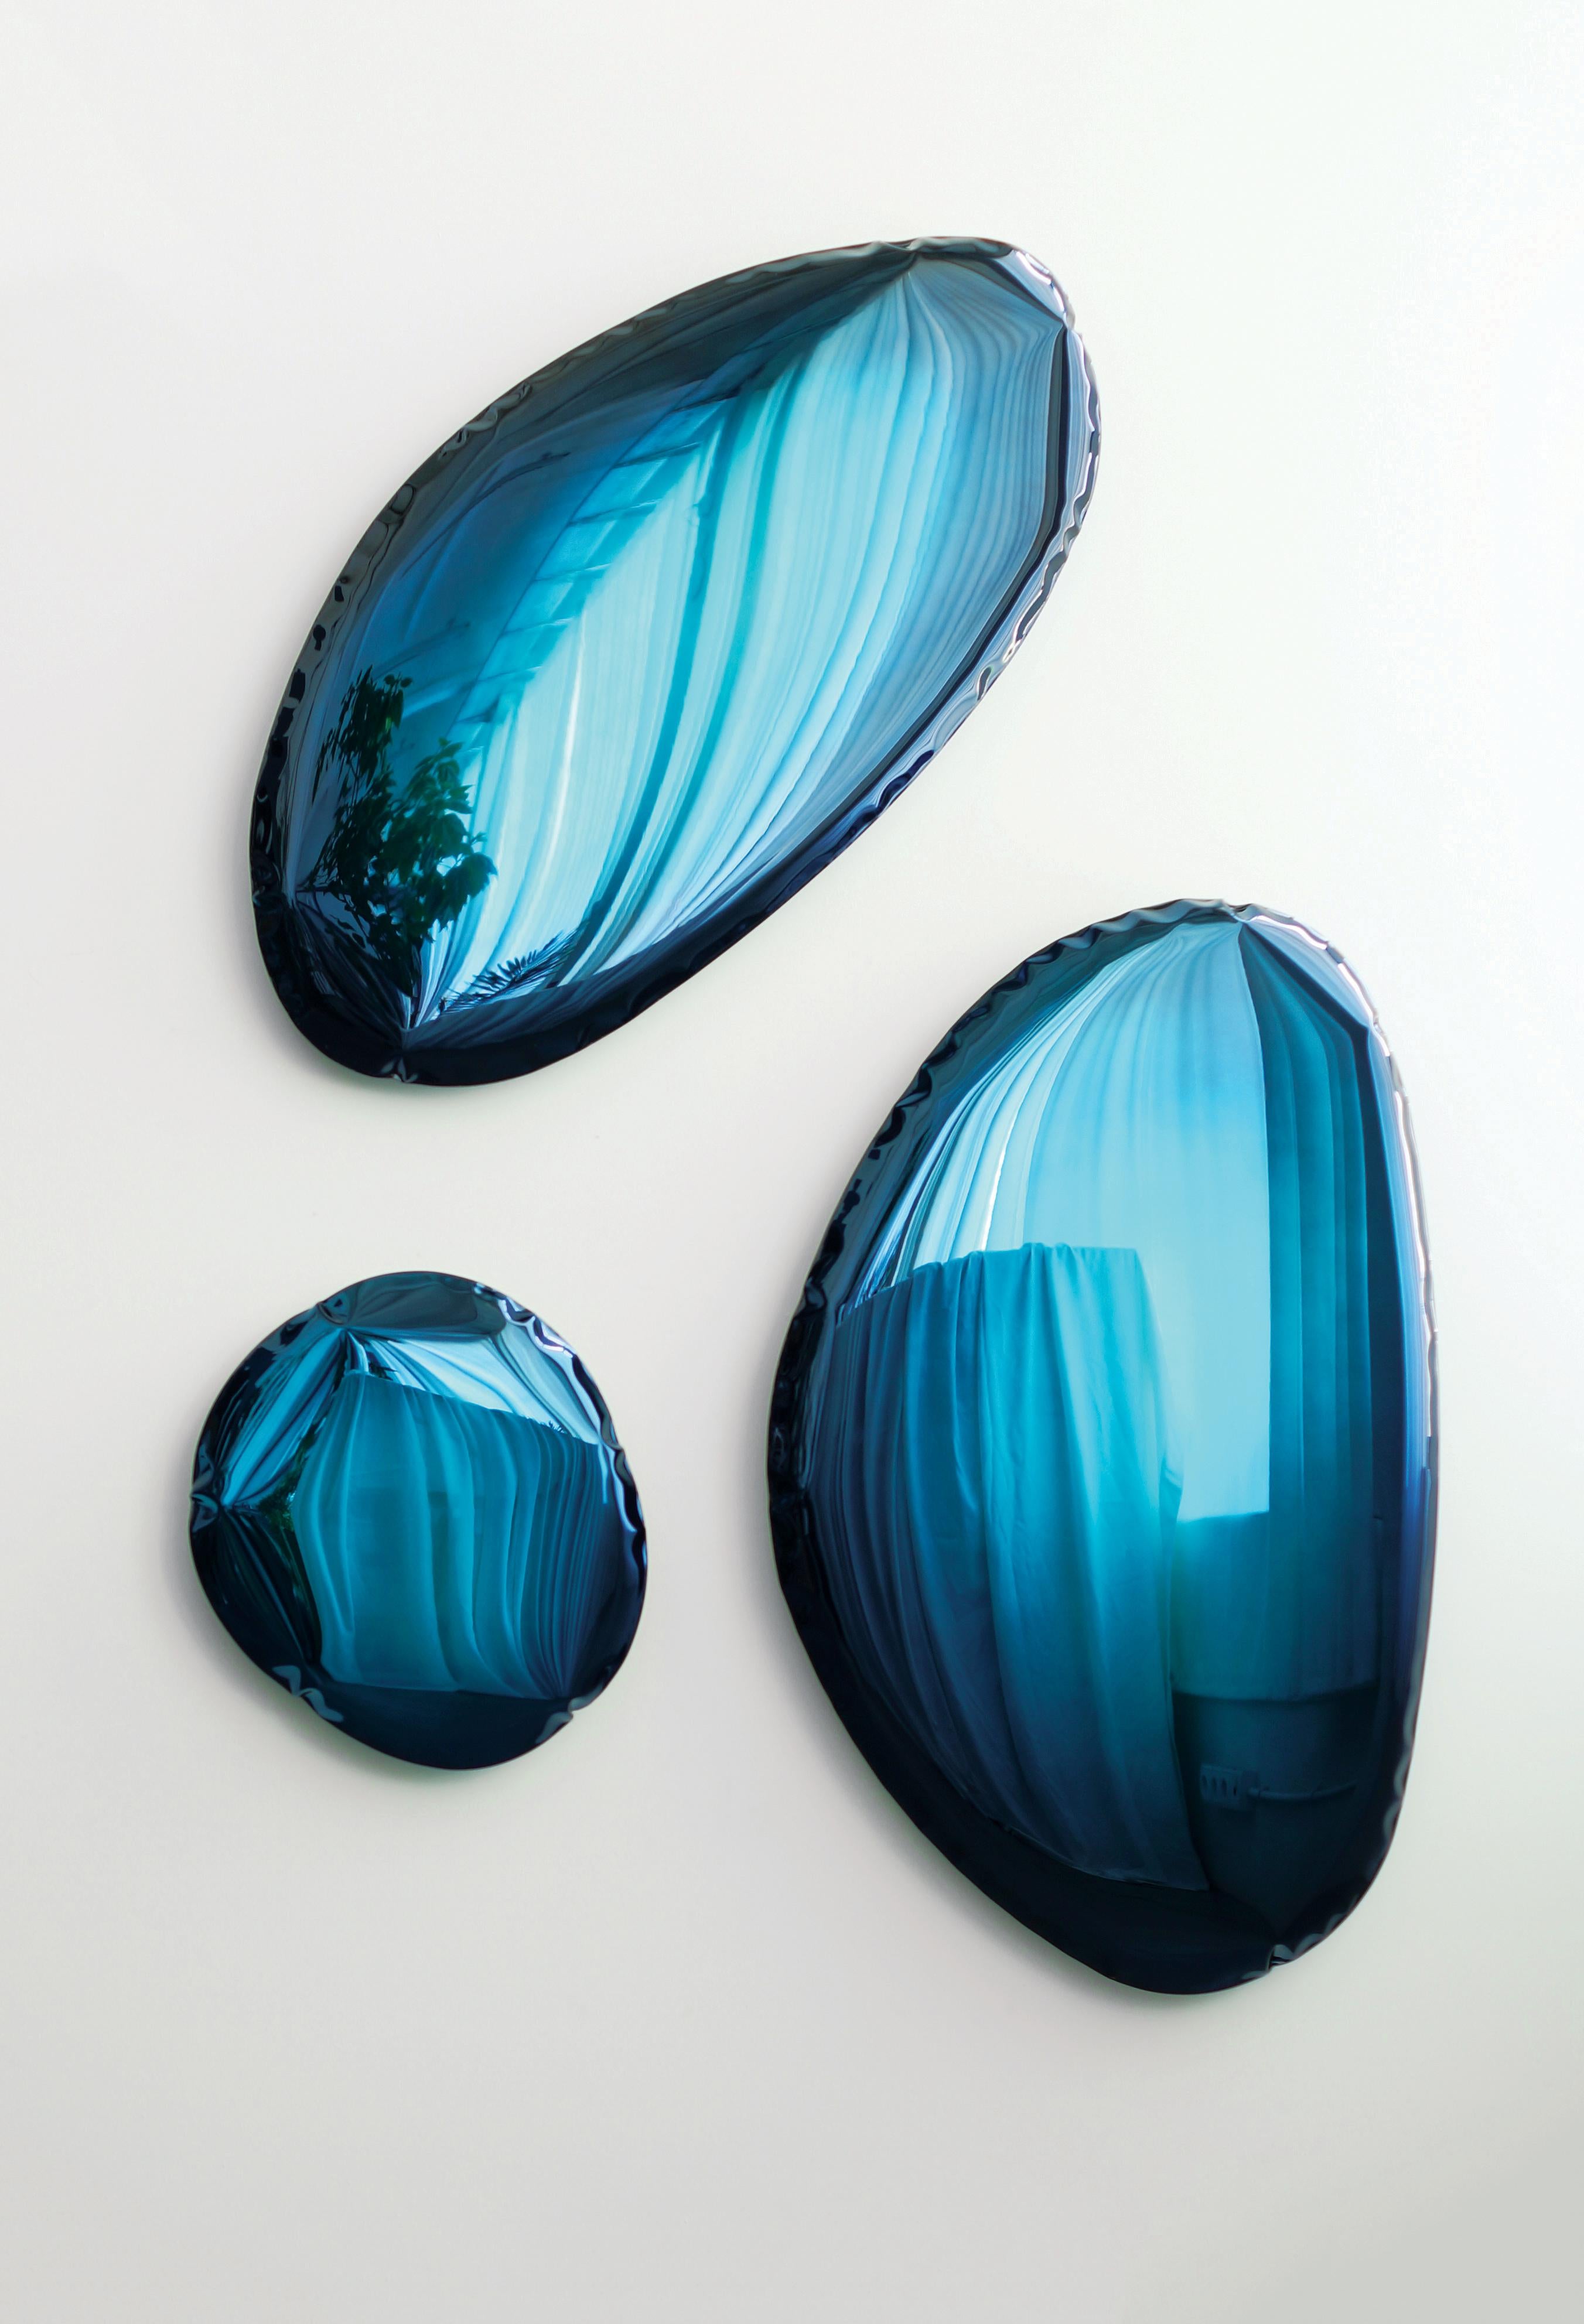 Zeitgenössischer spiegel Tafla O4.5 von Zieta
Collection'S mit Farbverlauf, tiefblaue Oberfläche

Original Zieta Spiegel, geliefert mit Zertifikat.

Polierter rostfreier Stahl
Maße: 86 x 57 x 6 cm.

Mehrere Ausführungen verfügbar: 
-